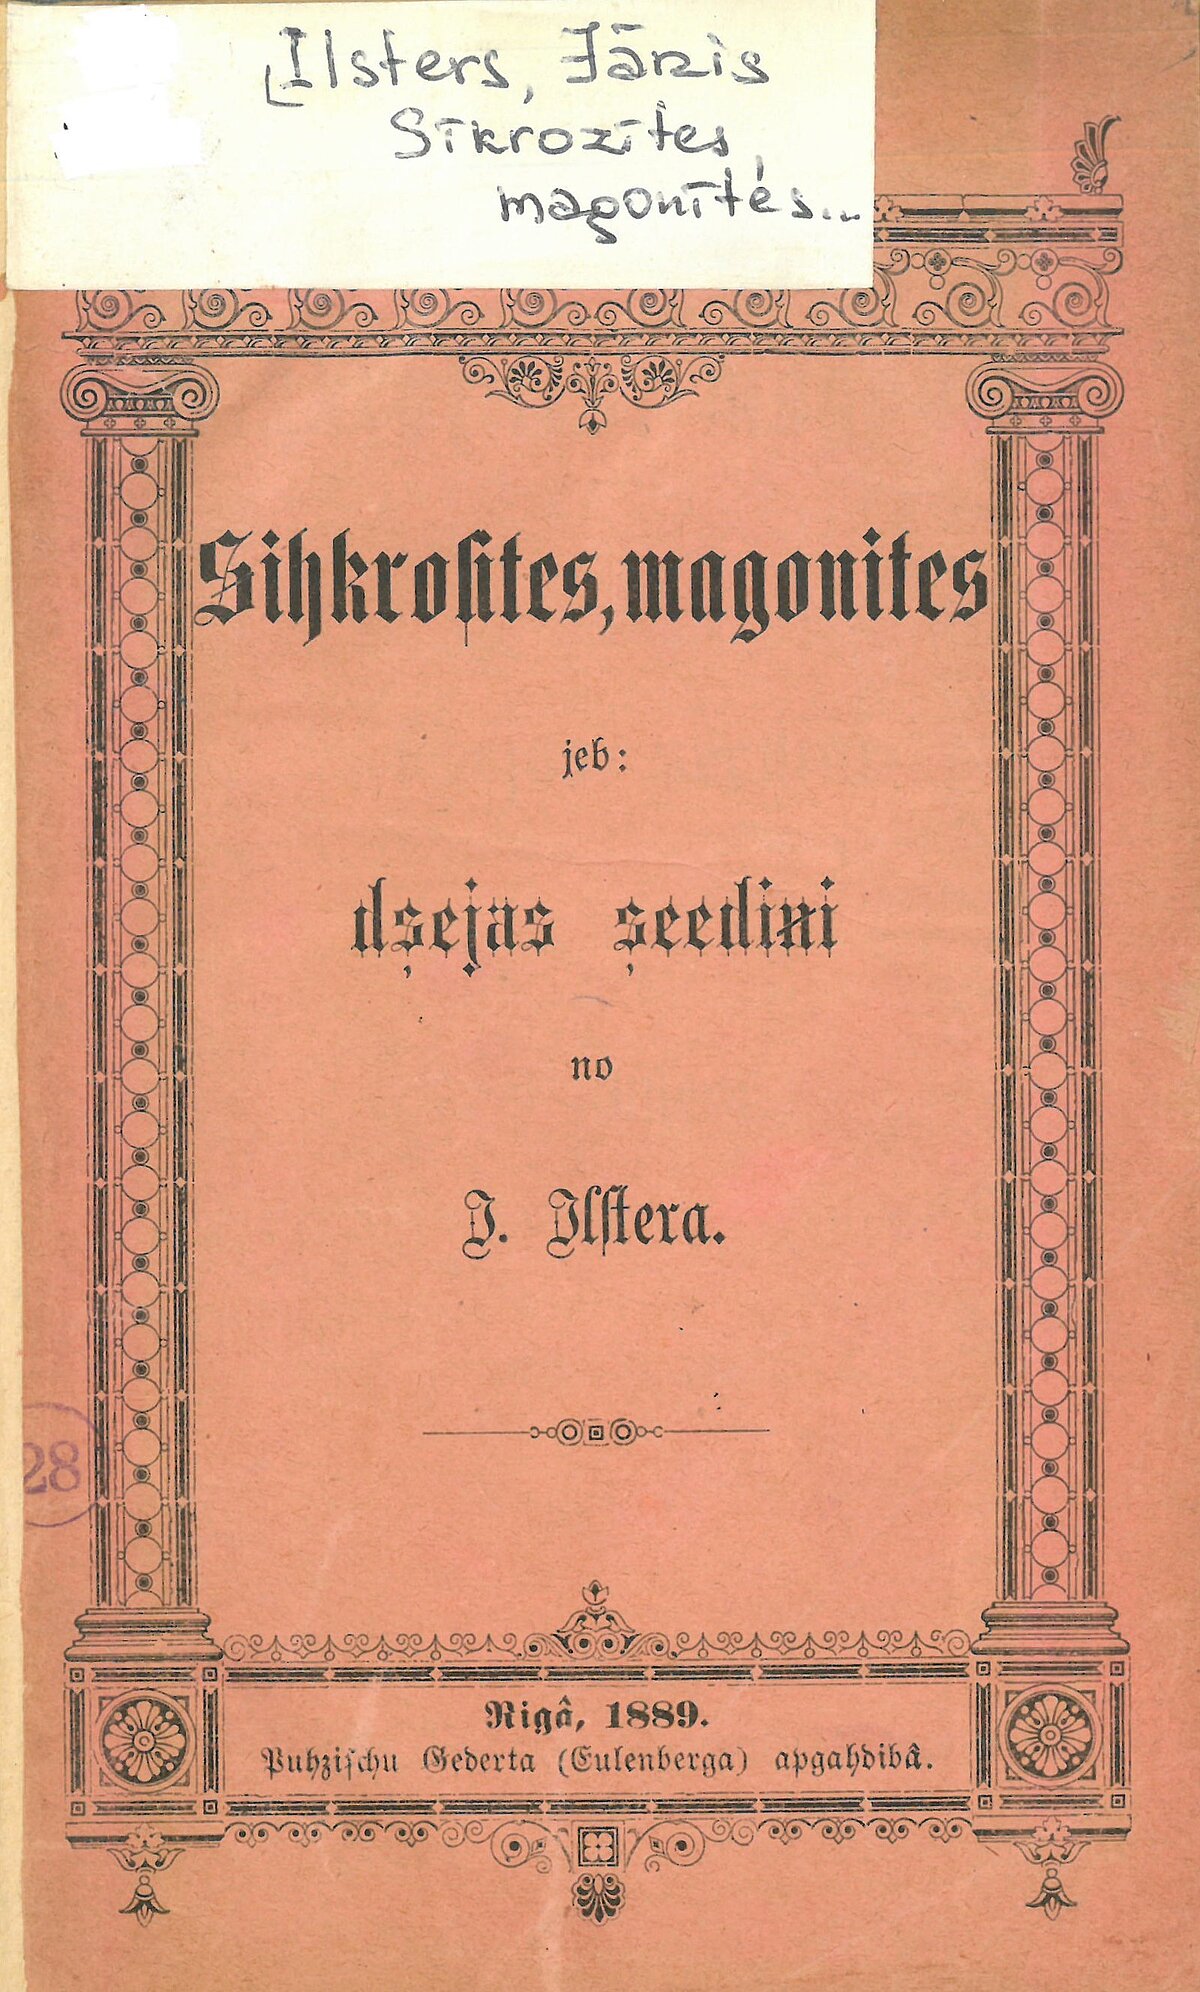 1889. gadā Pūcīšu Ģederta apgādā izdotais Jāņa Ilstera dzejoļu krājums “Sīkrozītes, magonītes, jeb dzejiski ziediņi no Ilstera"